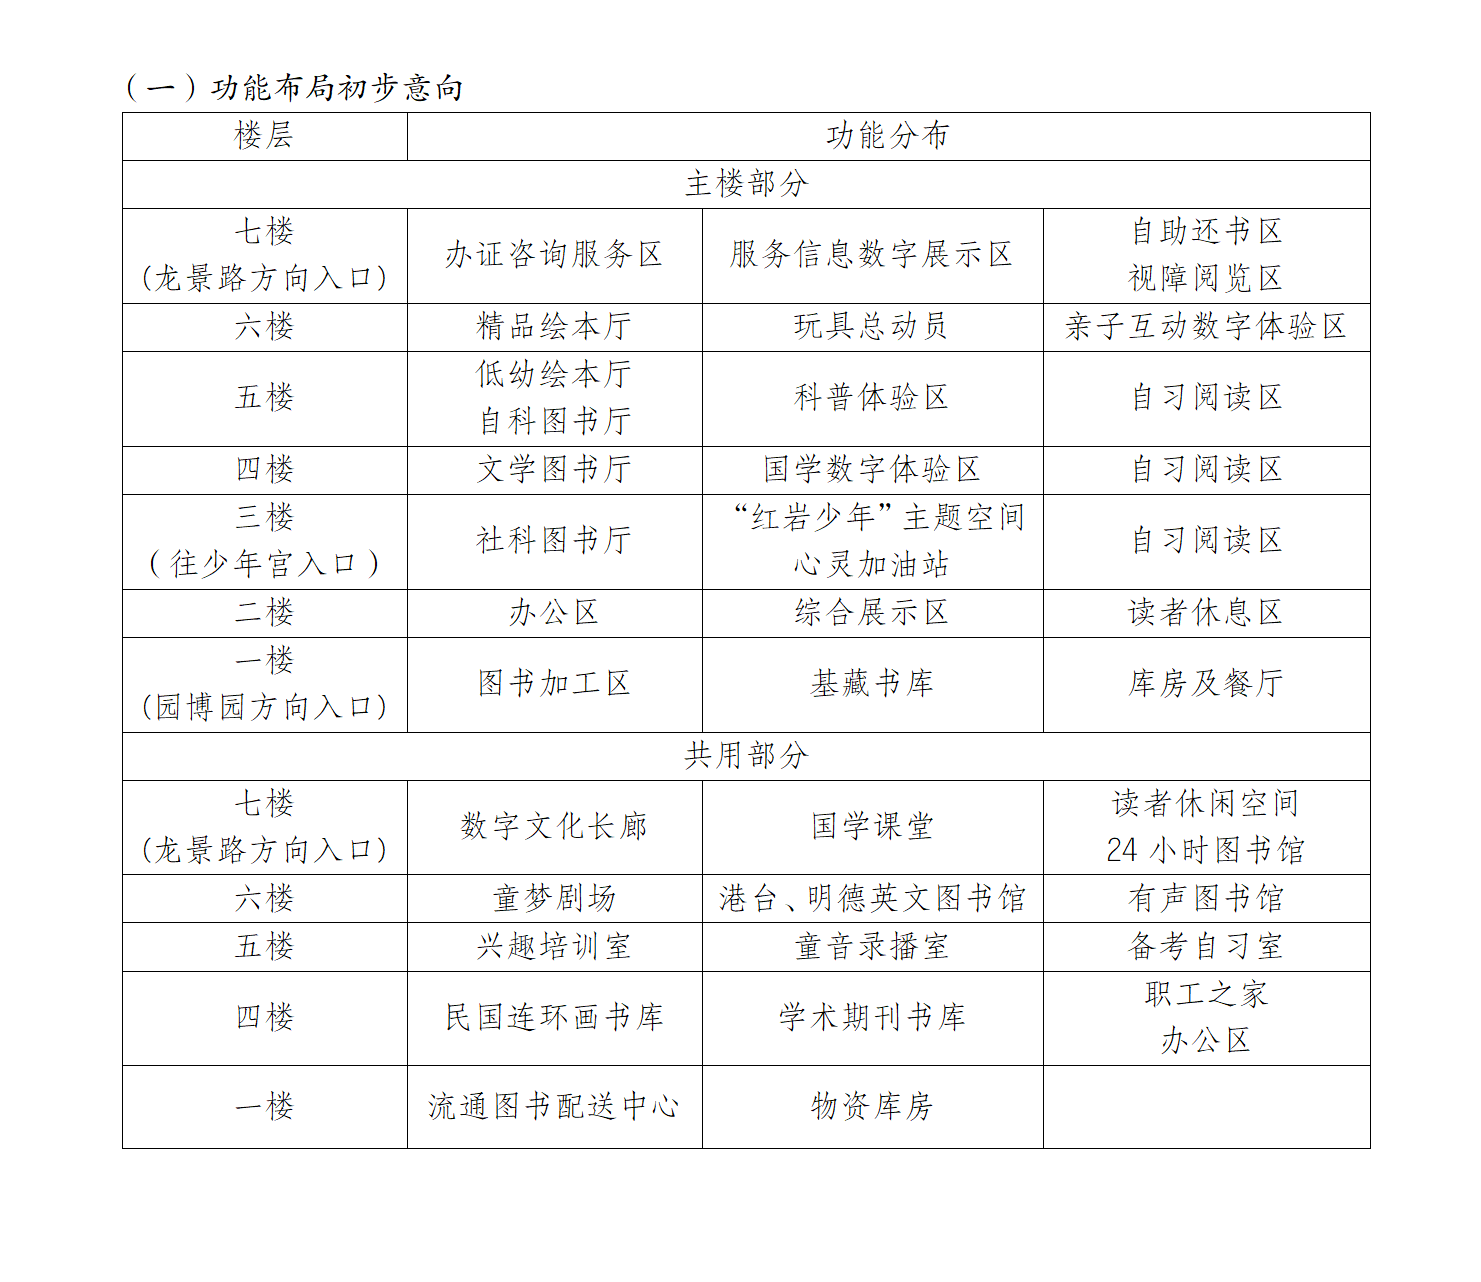 重庆市少年儿童图书馆新馆阅读空间深化概念设计方案征集公告（20240418）(1)_01.png